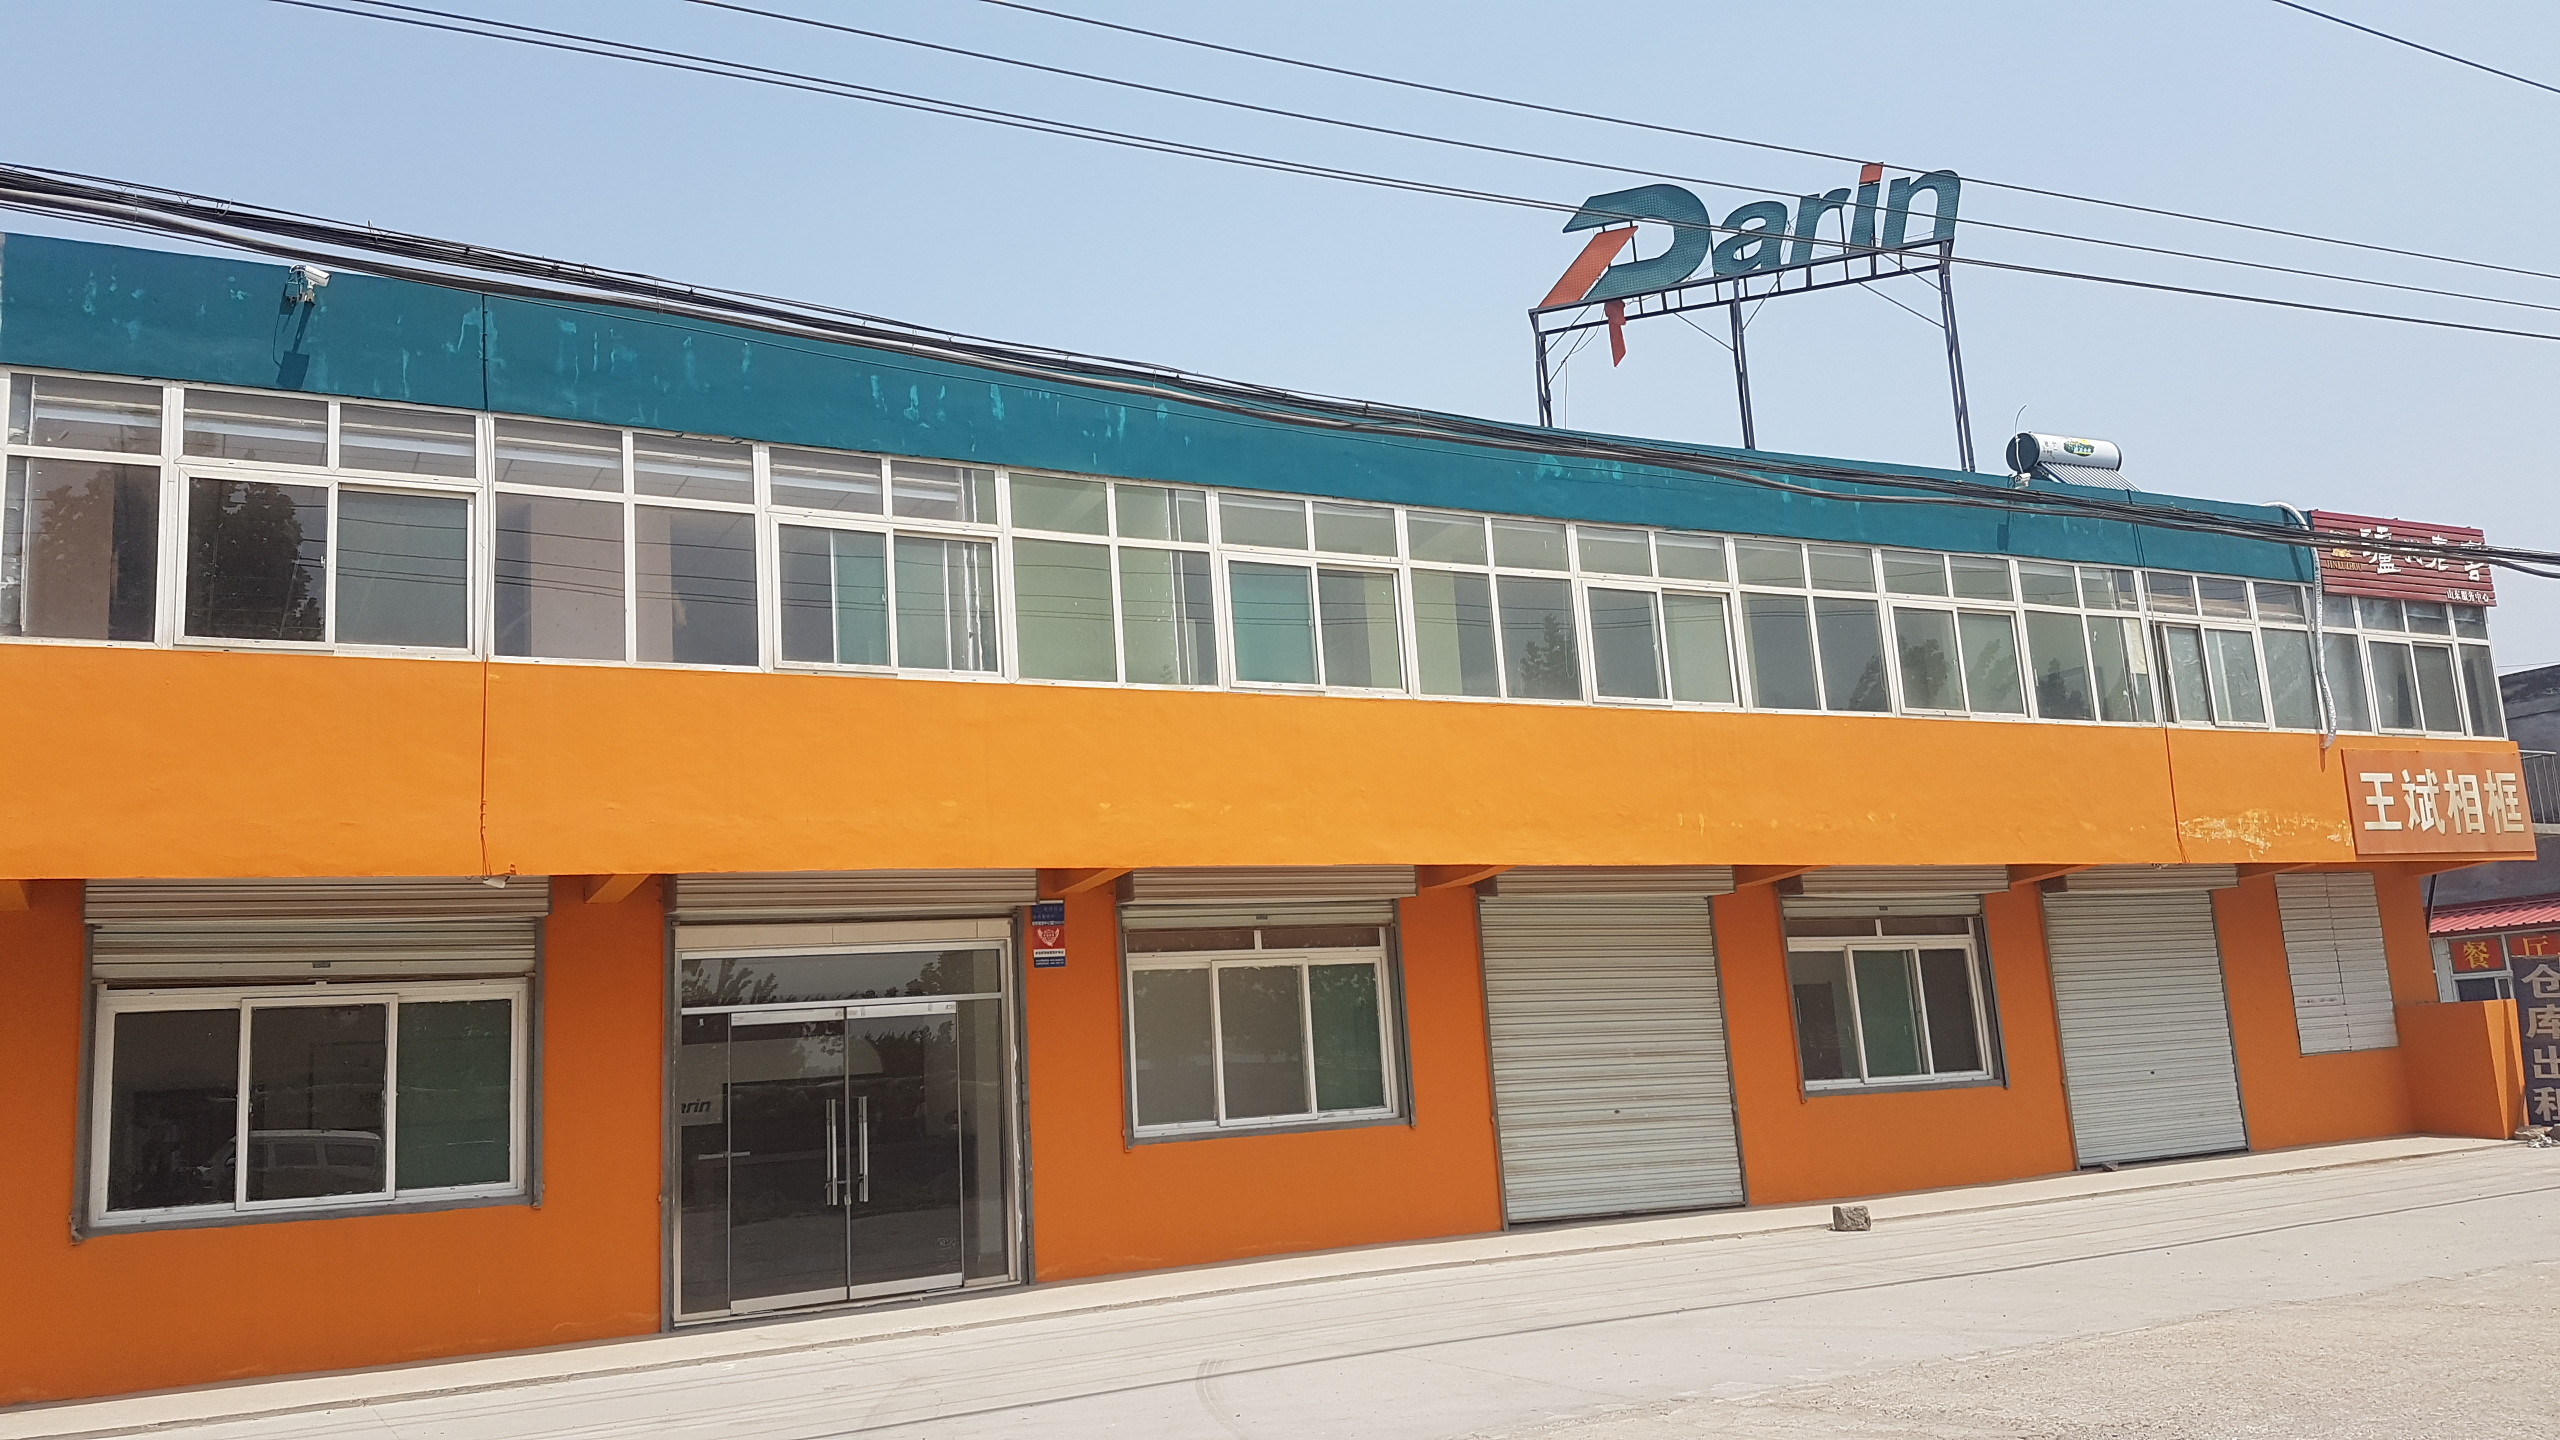 Jinan Darin Machinery Co., Ltd. 공장 생산 라인